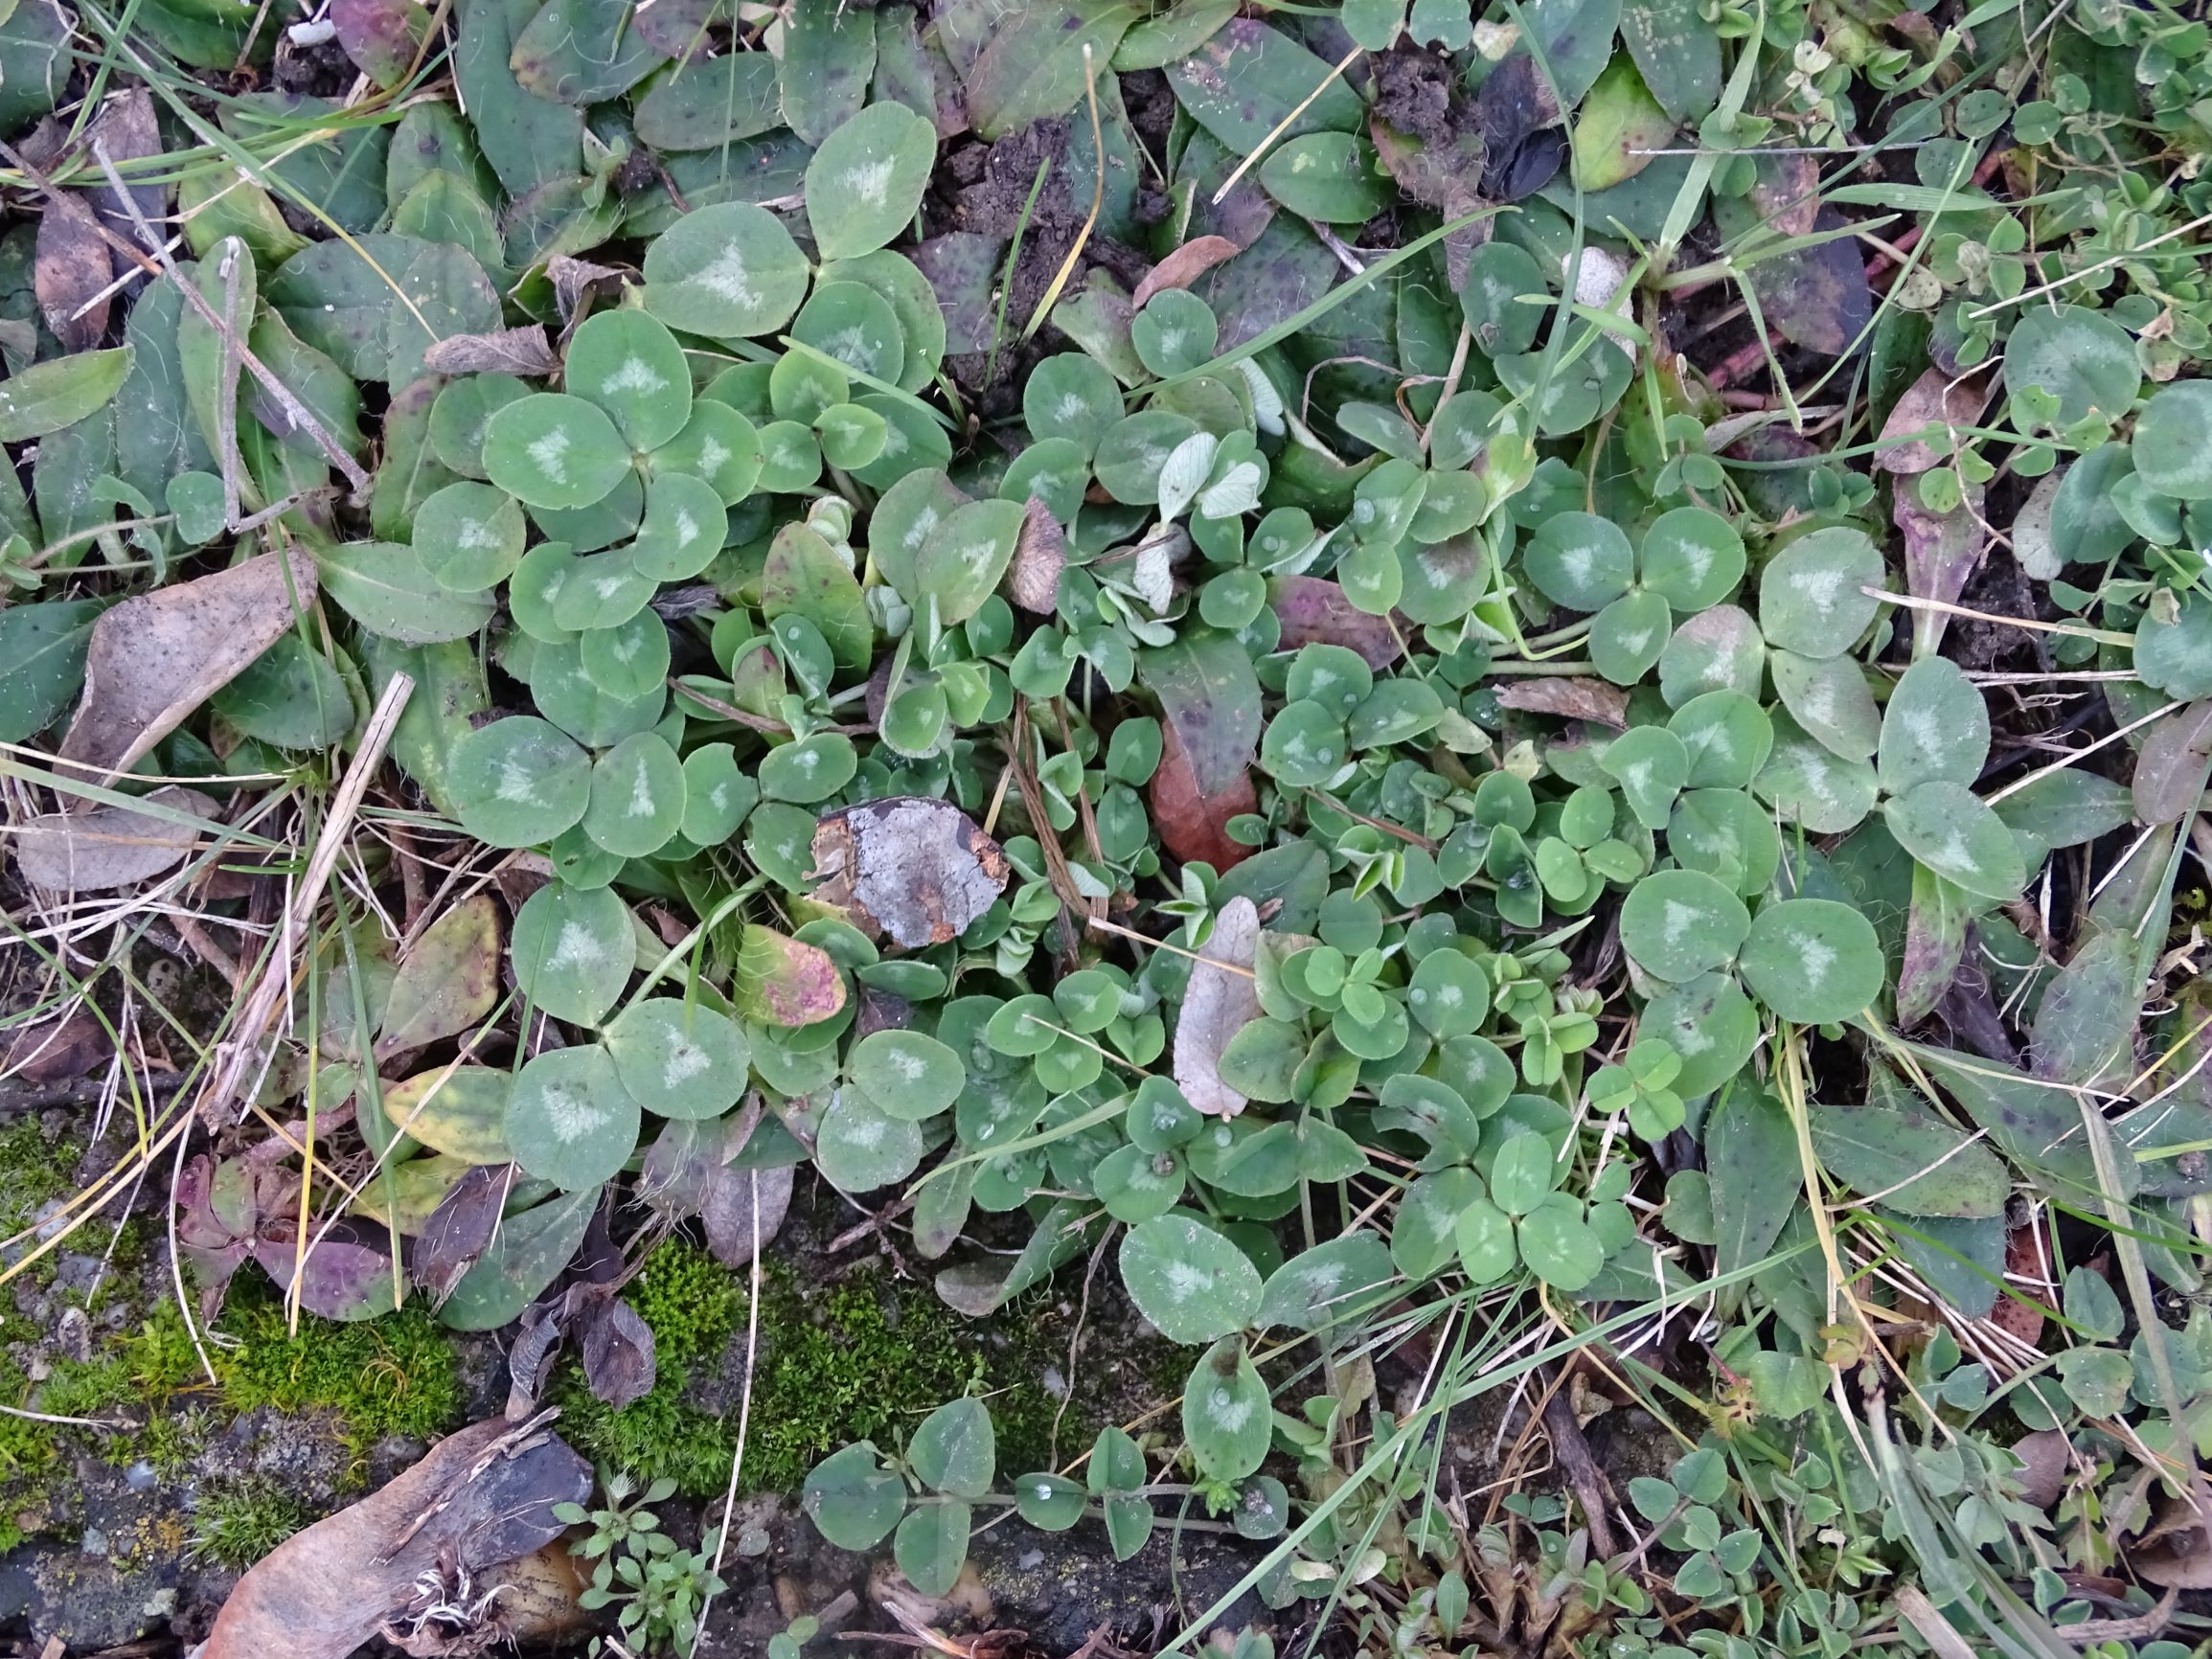 DSC07692 rosetten, friedhof hainburg, trifolium pratense, draba verna agg..JPG